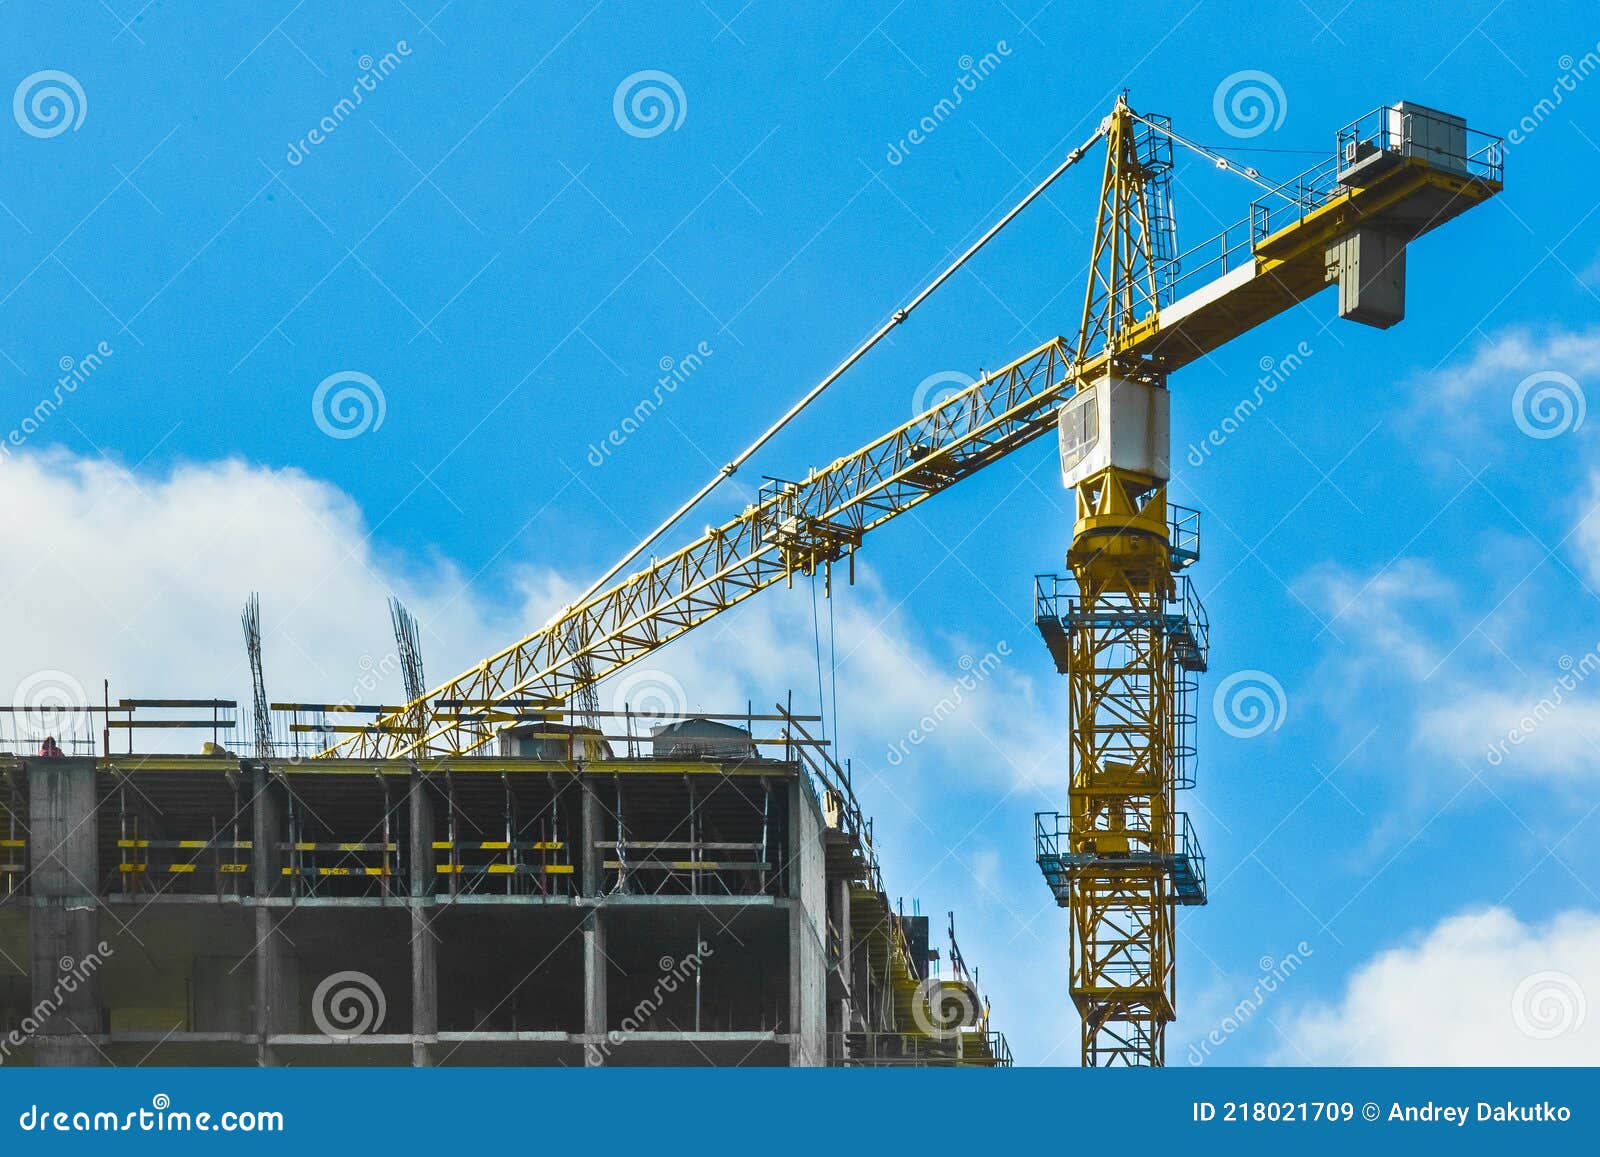 gr%C3%BAa-industrial-torre-en-obra-desarrollo-edilicio-y-de-arquitectura-urbana-218021709.jpg